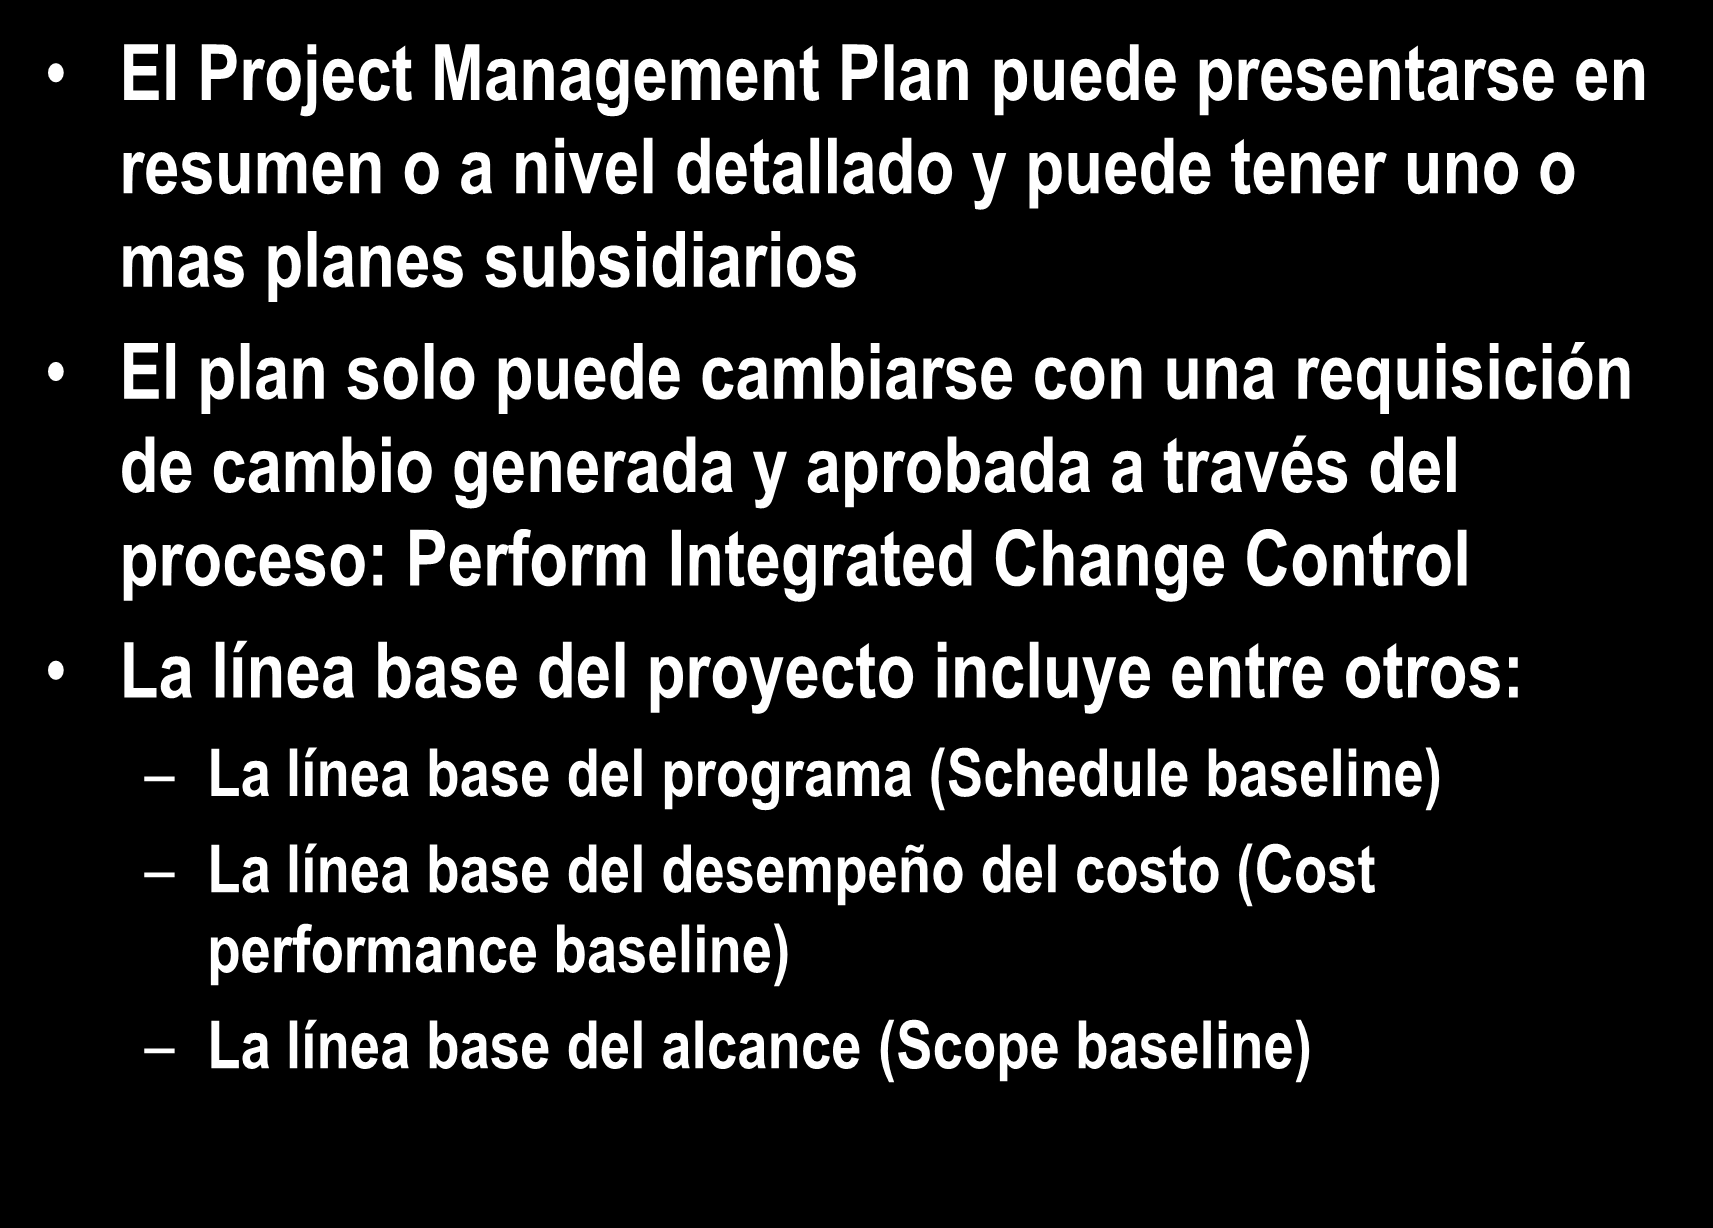 4.2 Develop Project Management Plan El Project Management Plan puede presentarse en resumen o a nivel detallado y puede tener uno o mas planes subsidiarios El plan solo puede cambiarse con una